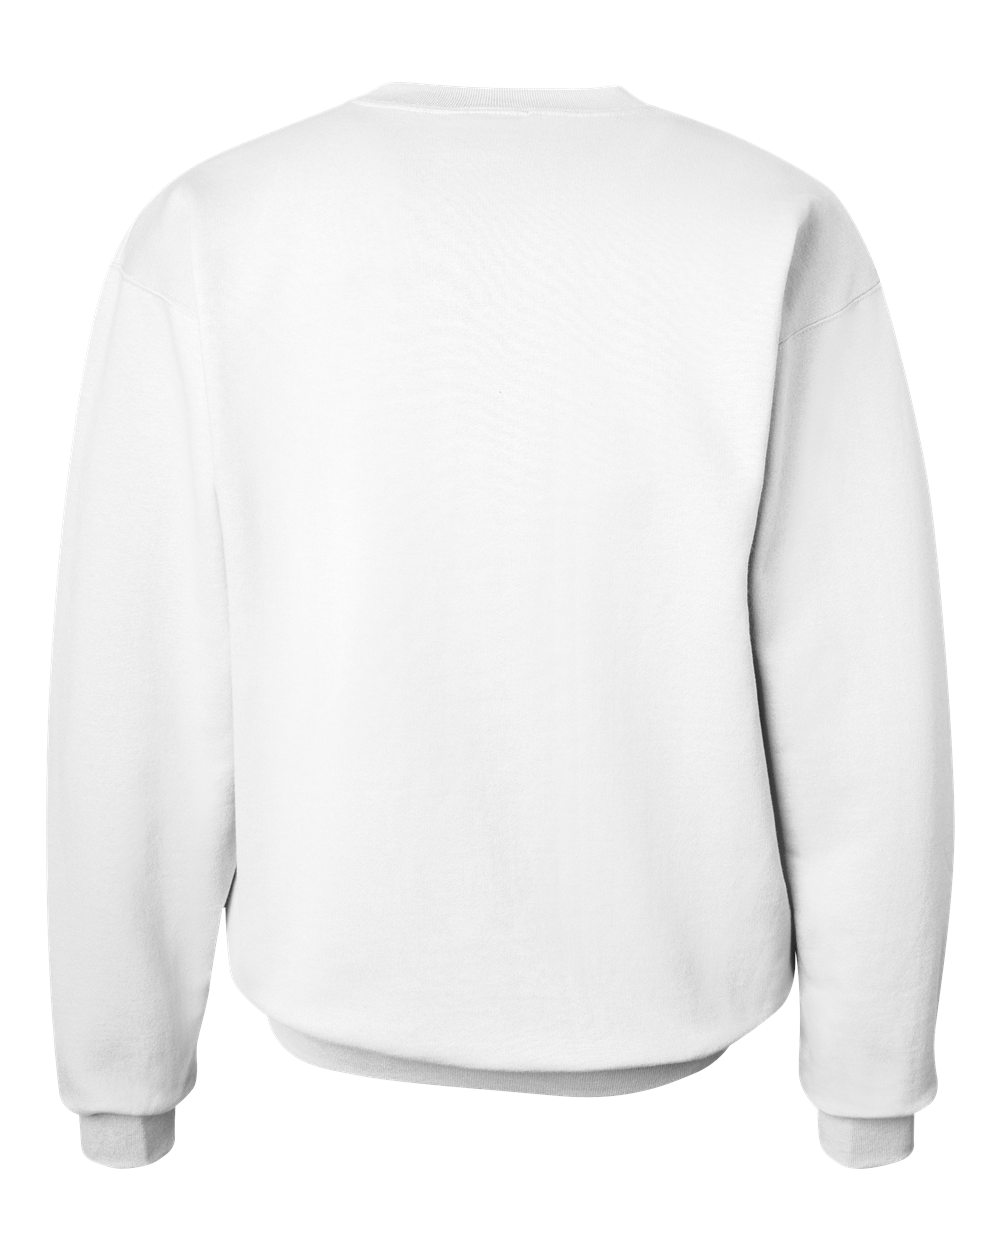 Hanes F260 Ultimate Cotton Crewneck Sweatshirt